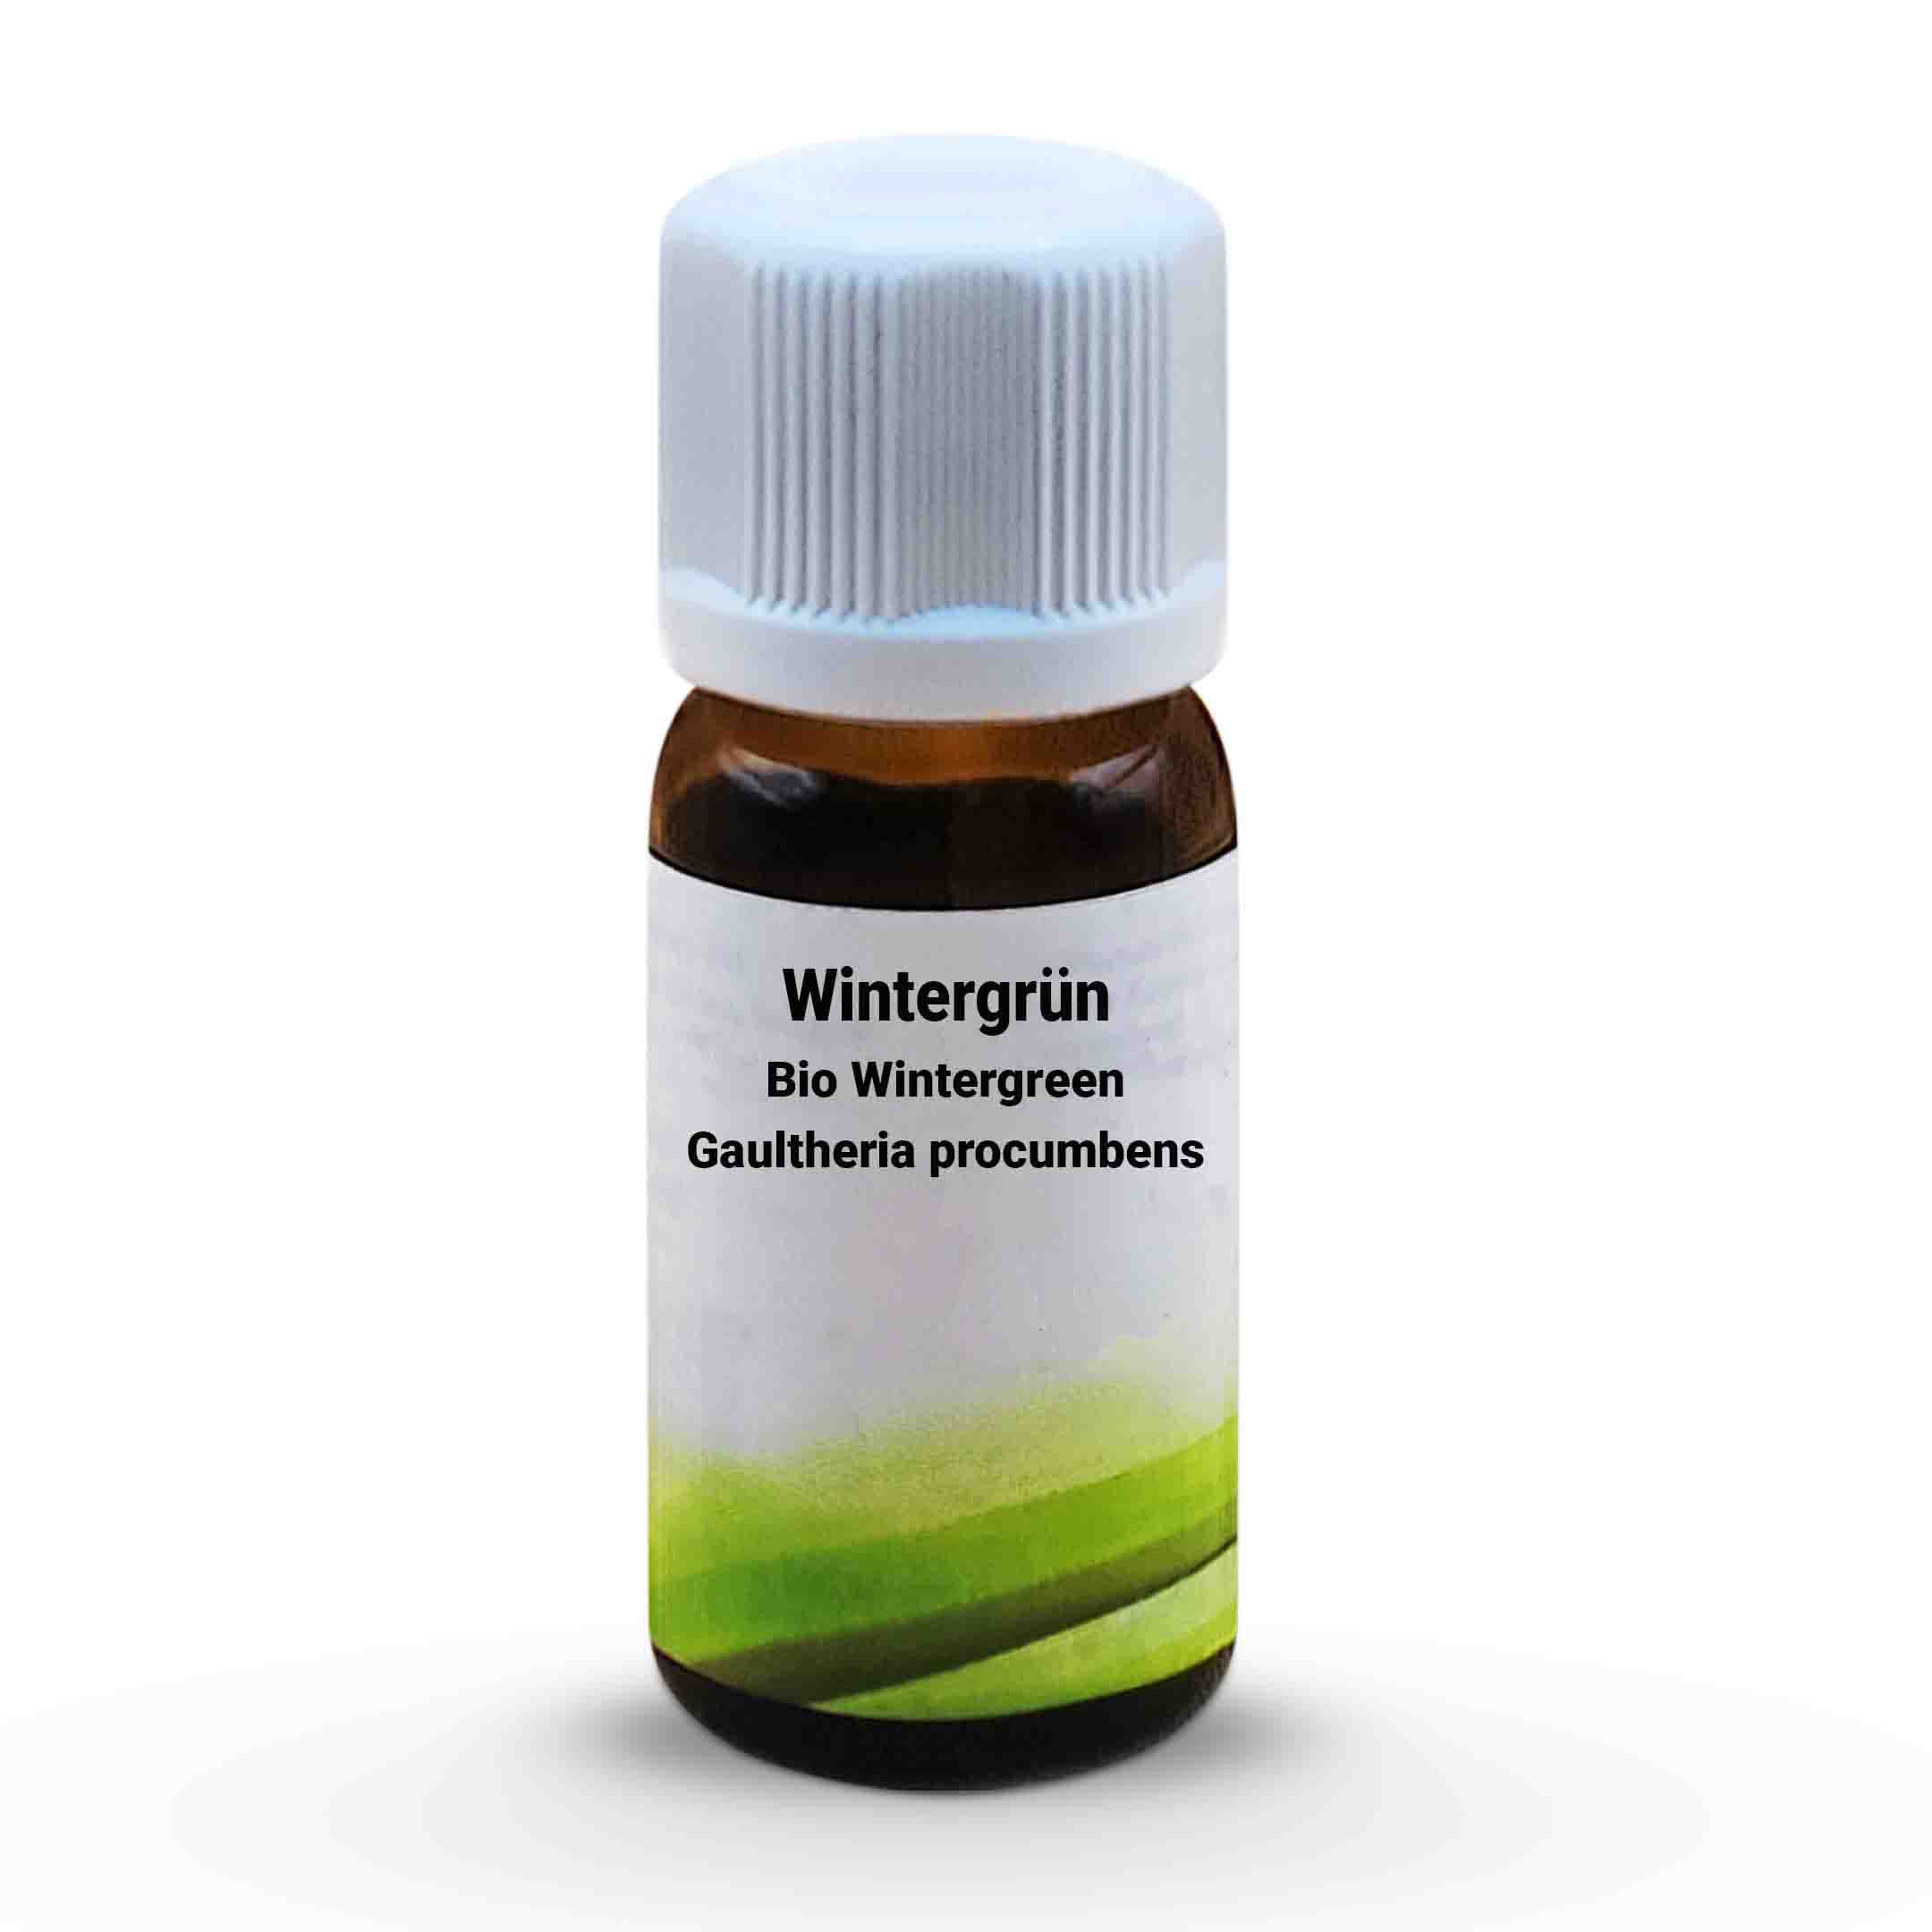 Wintergrün Bio Wintergreen Gaultheria procumbens 10 ml